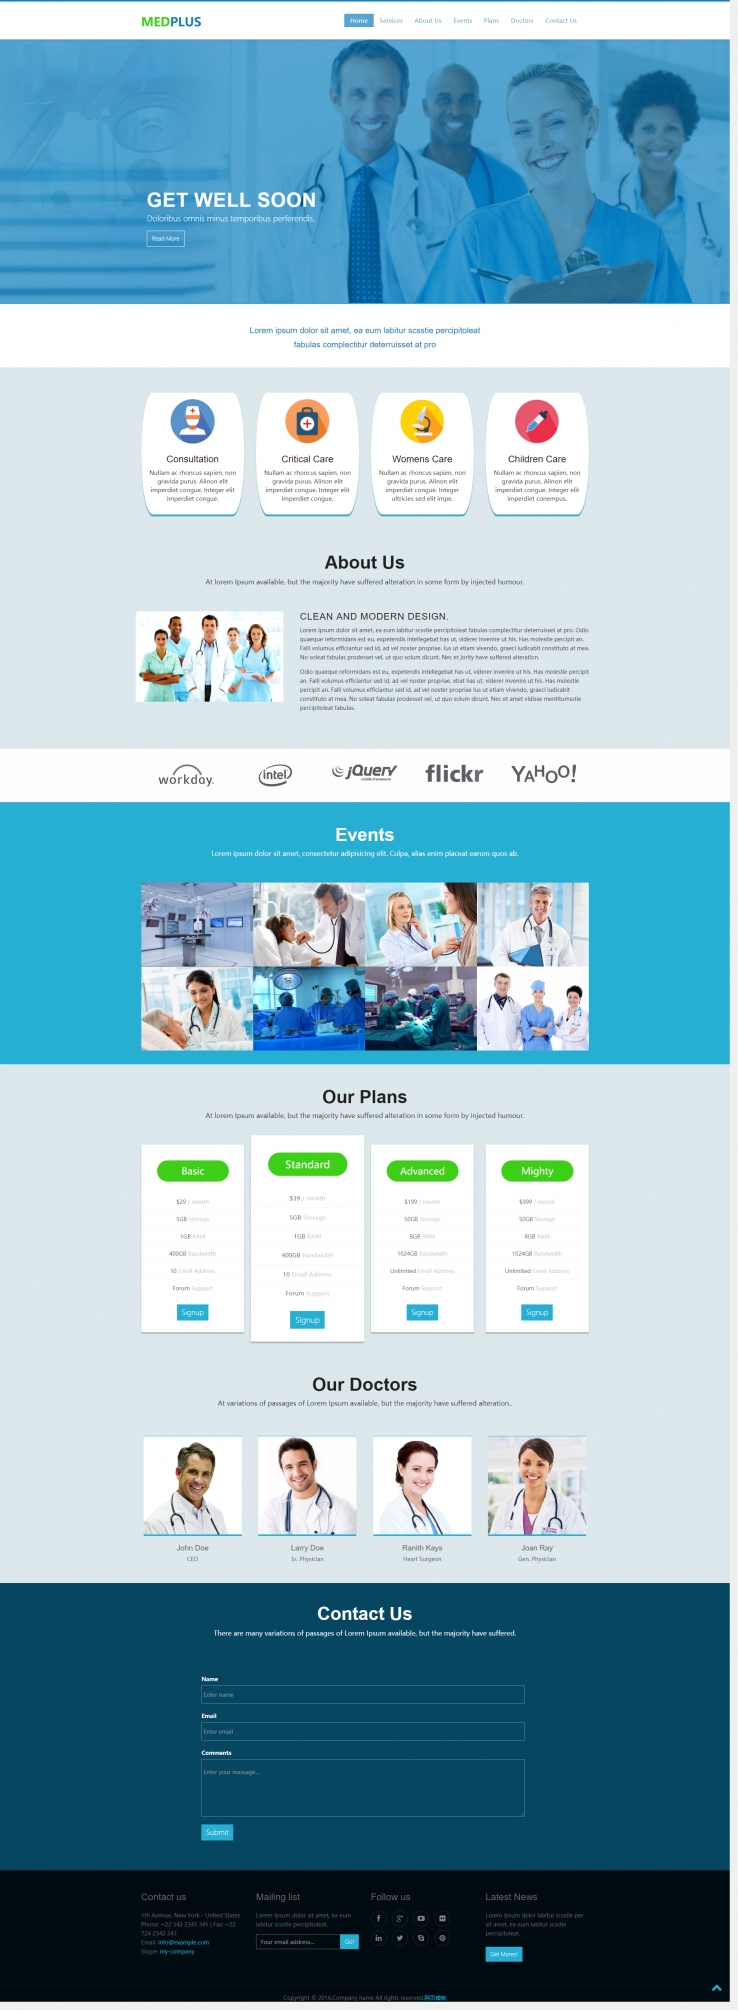 蓝色简洁风格的医疗项目网站模板下载